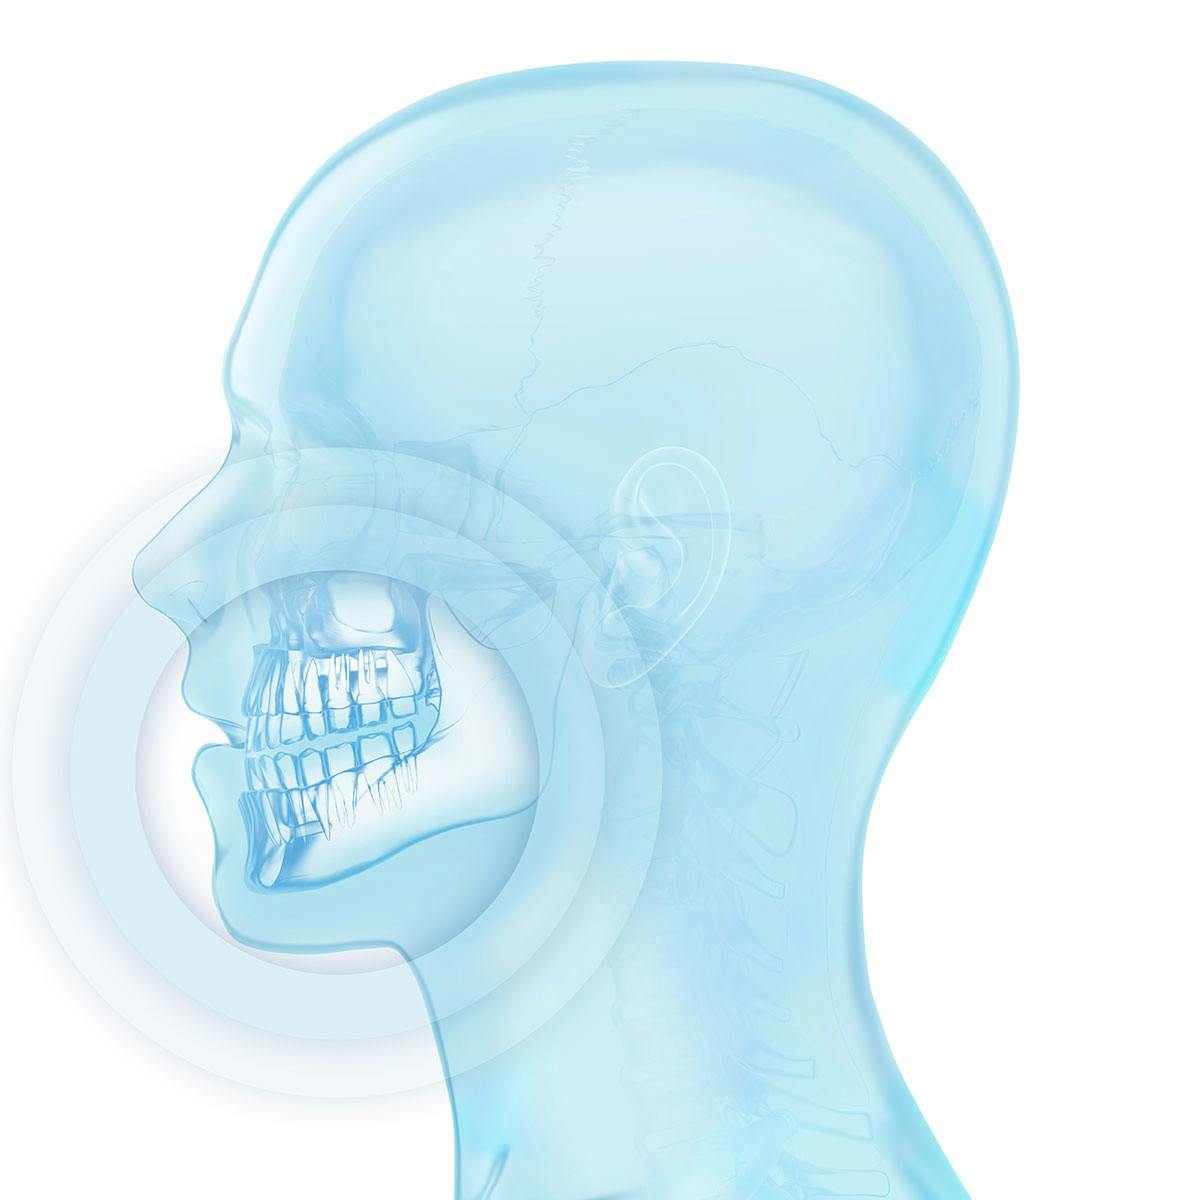 Røntgenlignende bilde av et menneskehode, med uthevet område rundt munn og tenner